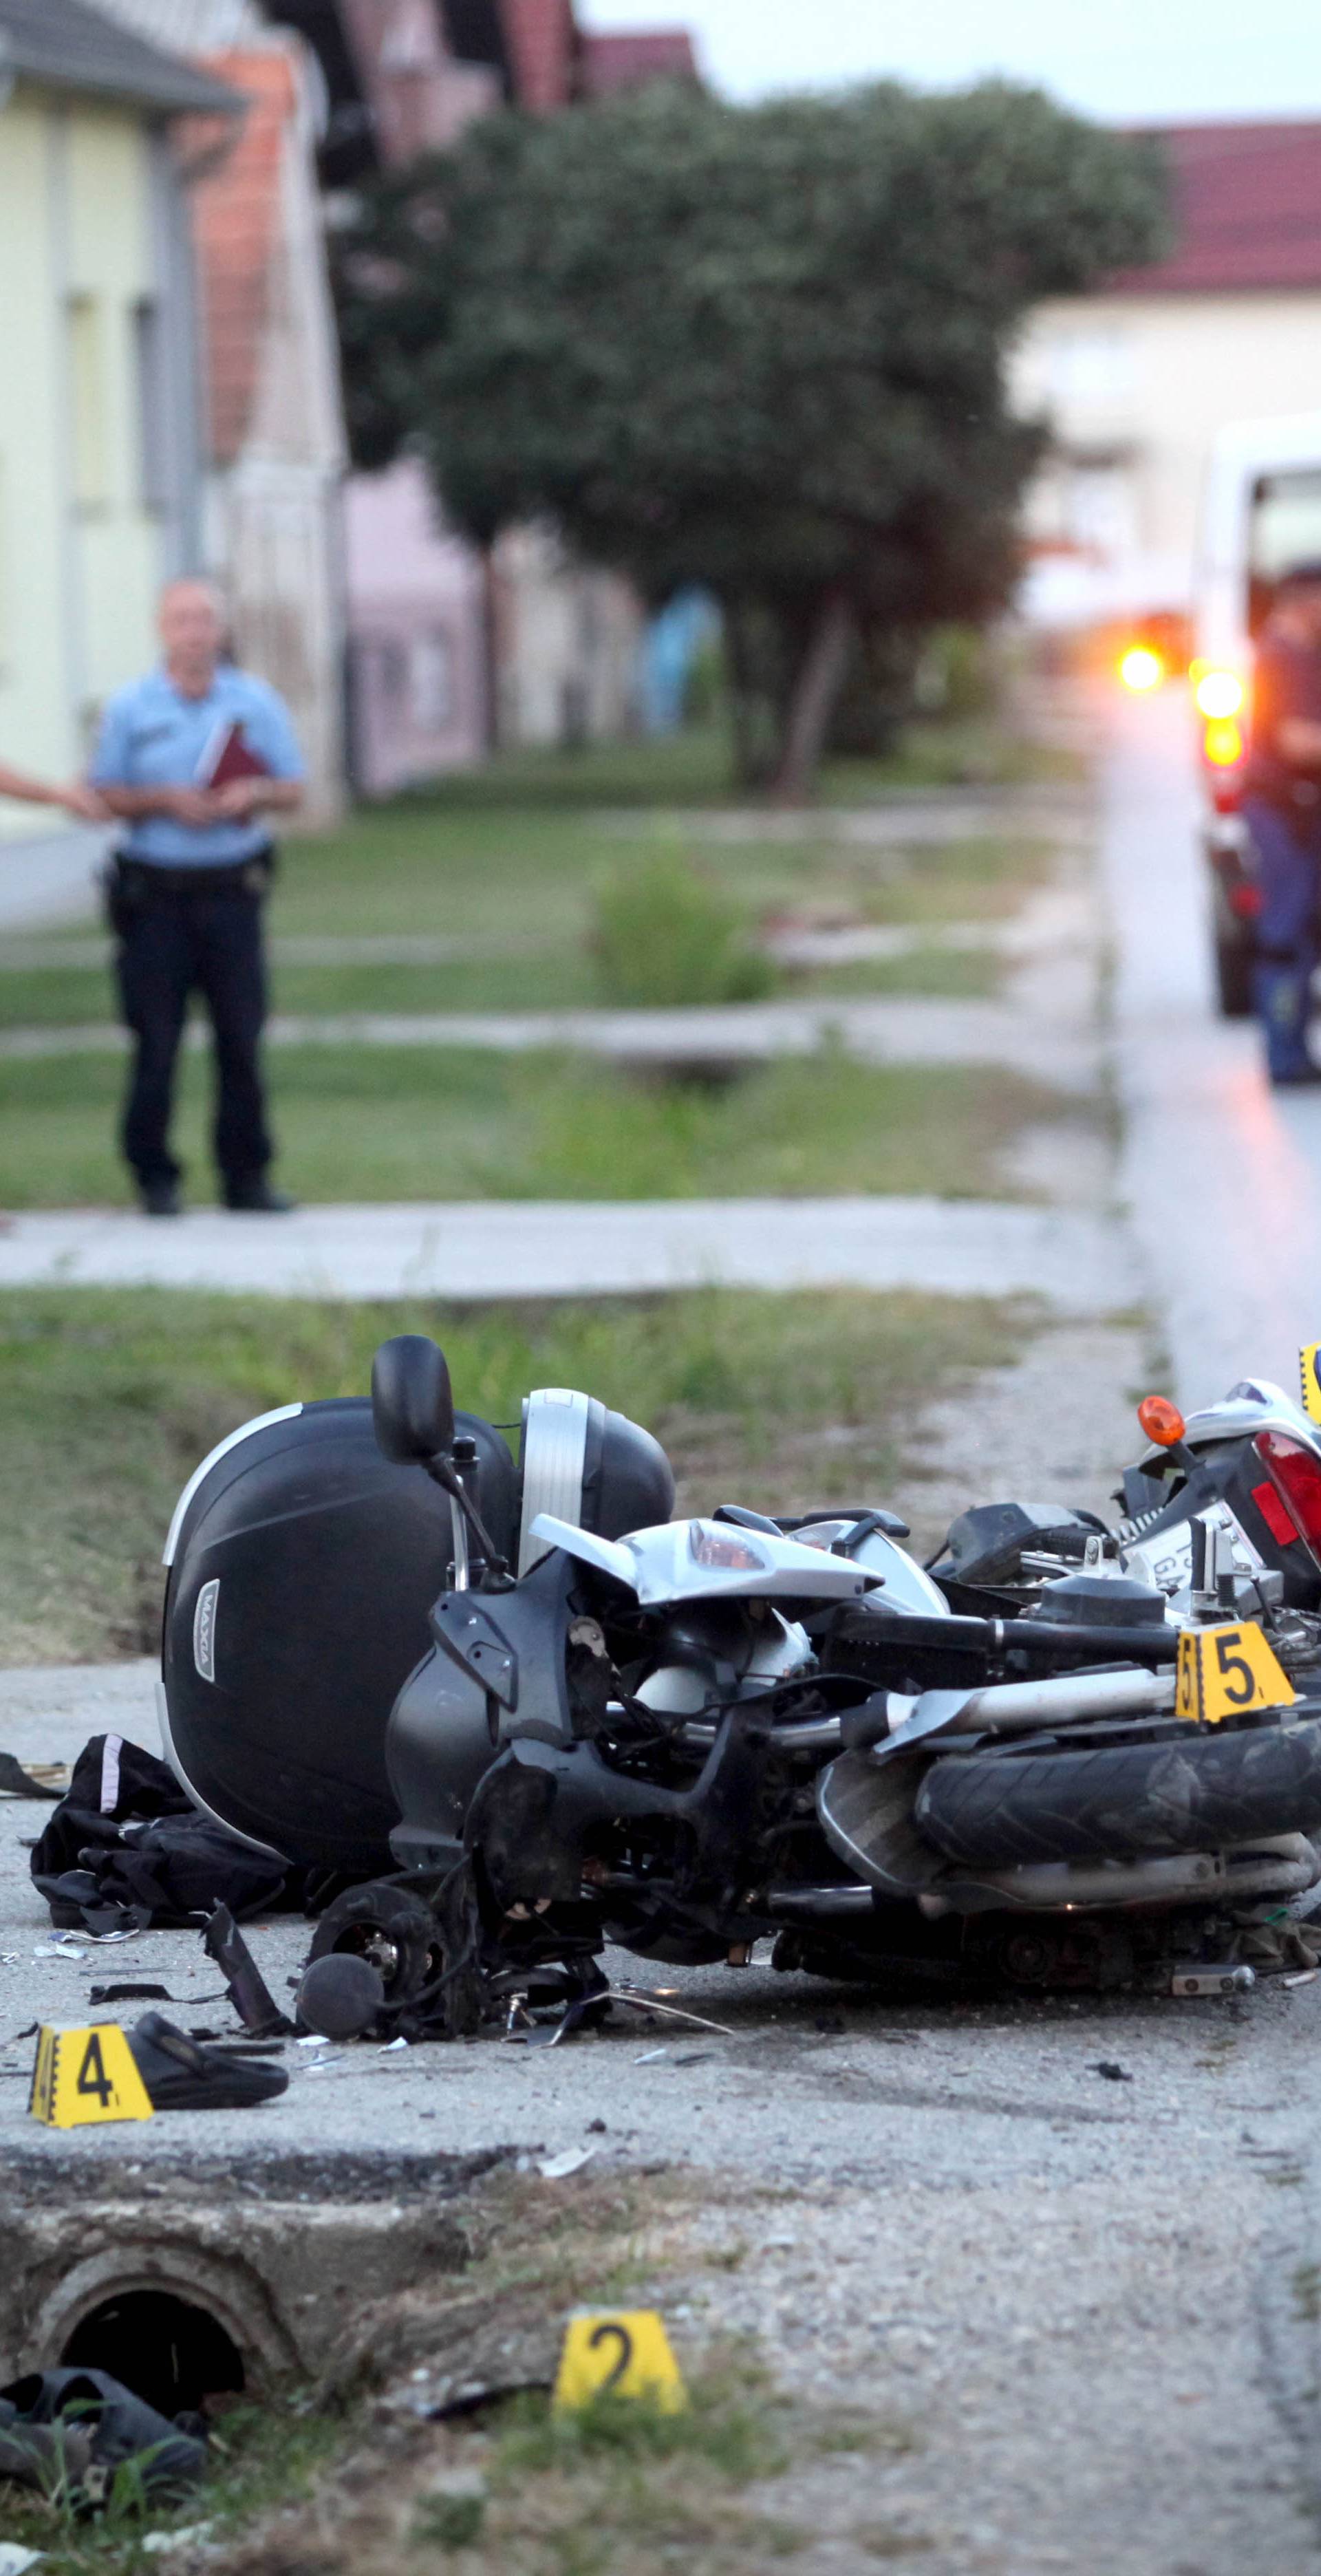 Sudarili se motocikli: Troje je ljudi ozlijeđeno, očevid u tijeku